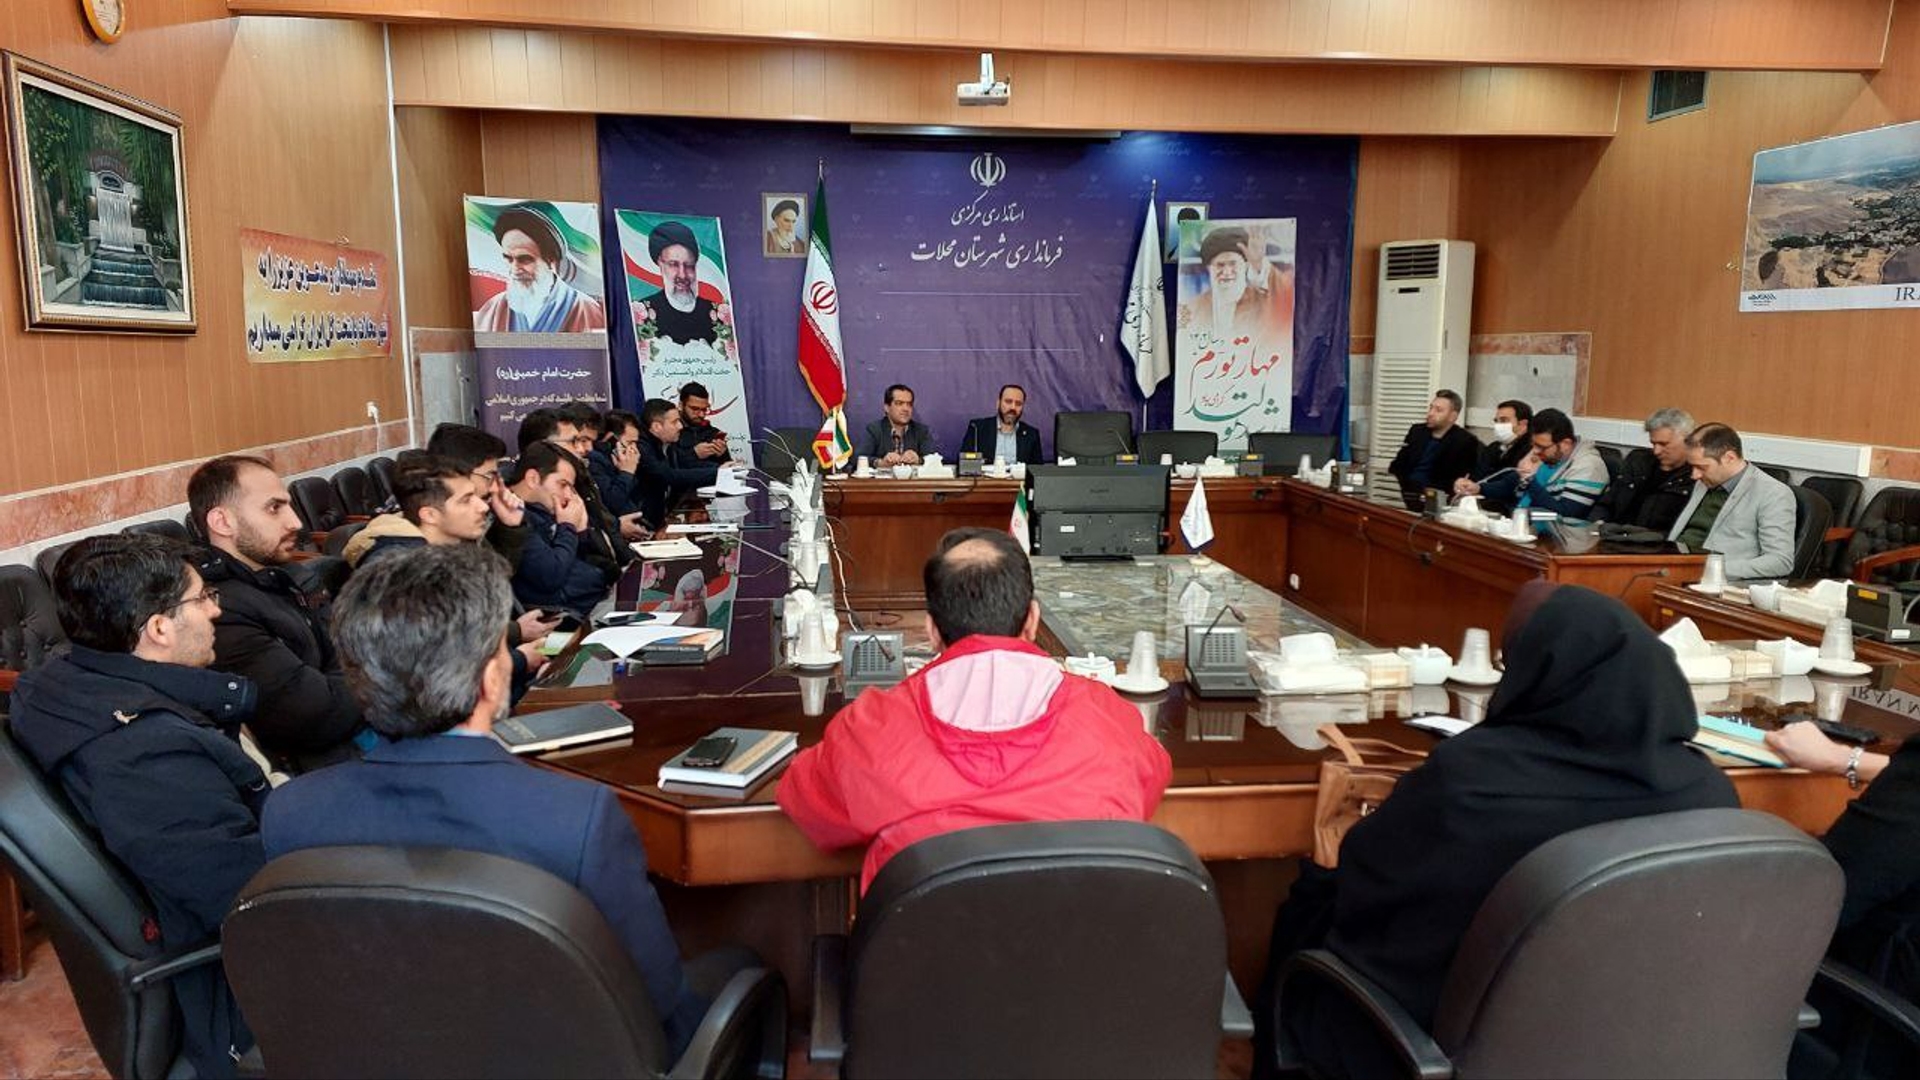 جلسه شورای هماهنگی روابط عمومی های دستگاه های اجرایی شهرستان محلات برگزار شد.